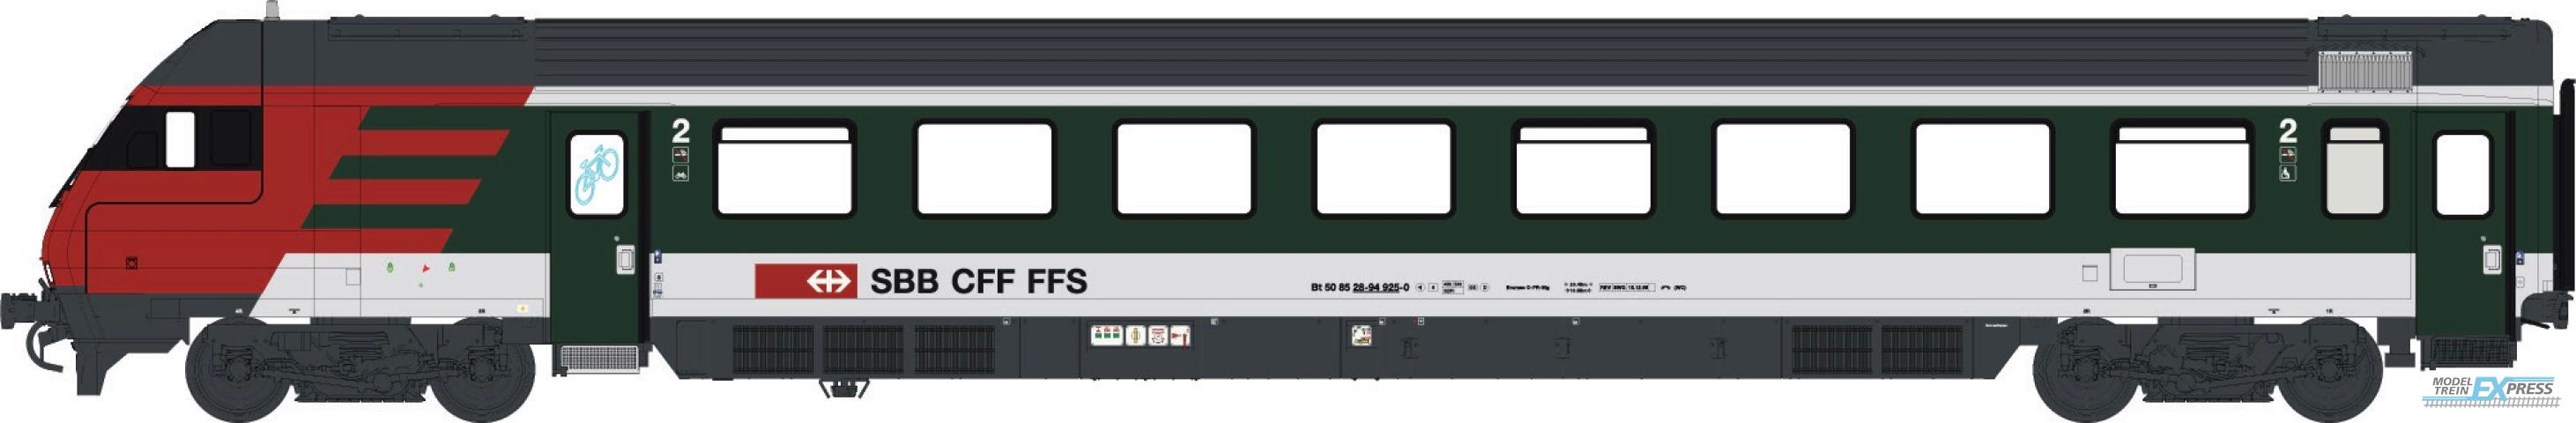 LS Models 472200AC InterCity-stuurstandwagen 2e klasse, groen/lichtgrijs met rood front  /  Ep. V  /  SBB  /  HO  /  AC  /  1 P.